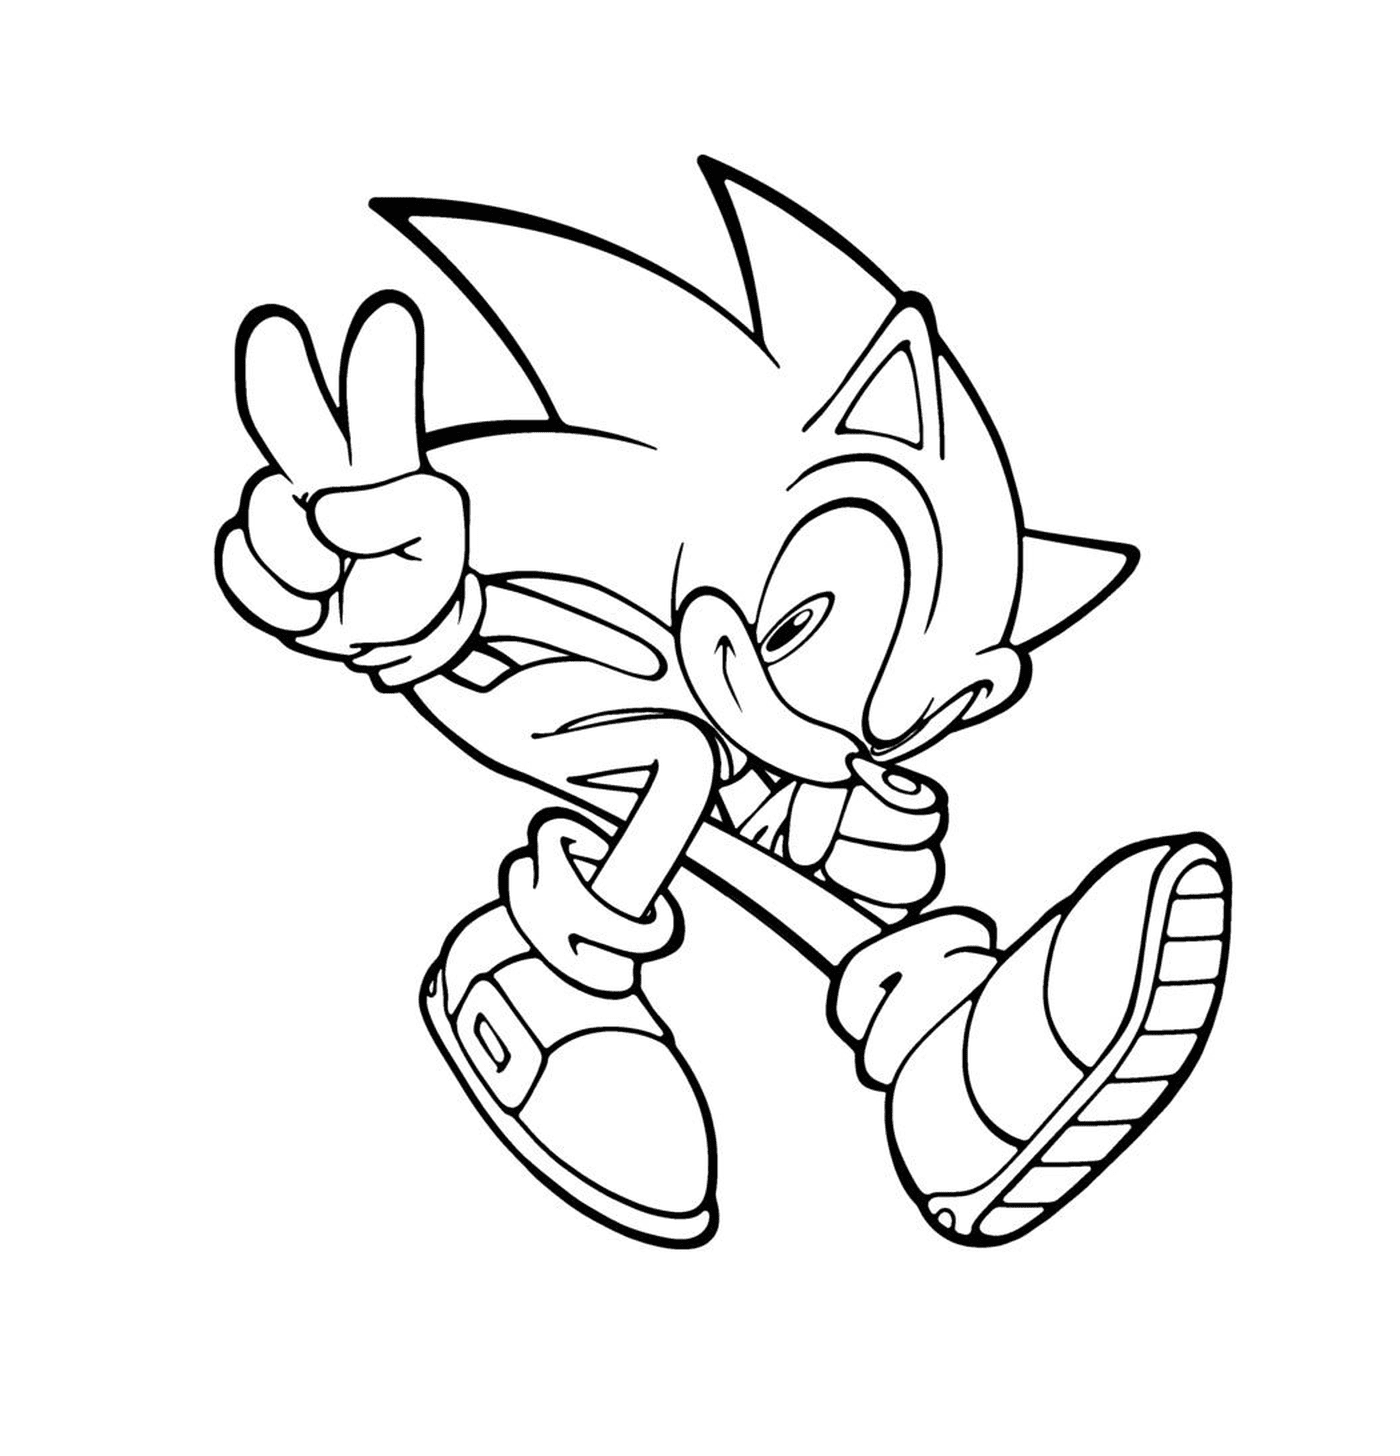  Sonic fazendo um sinal de paz 